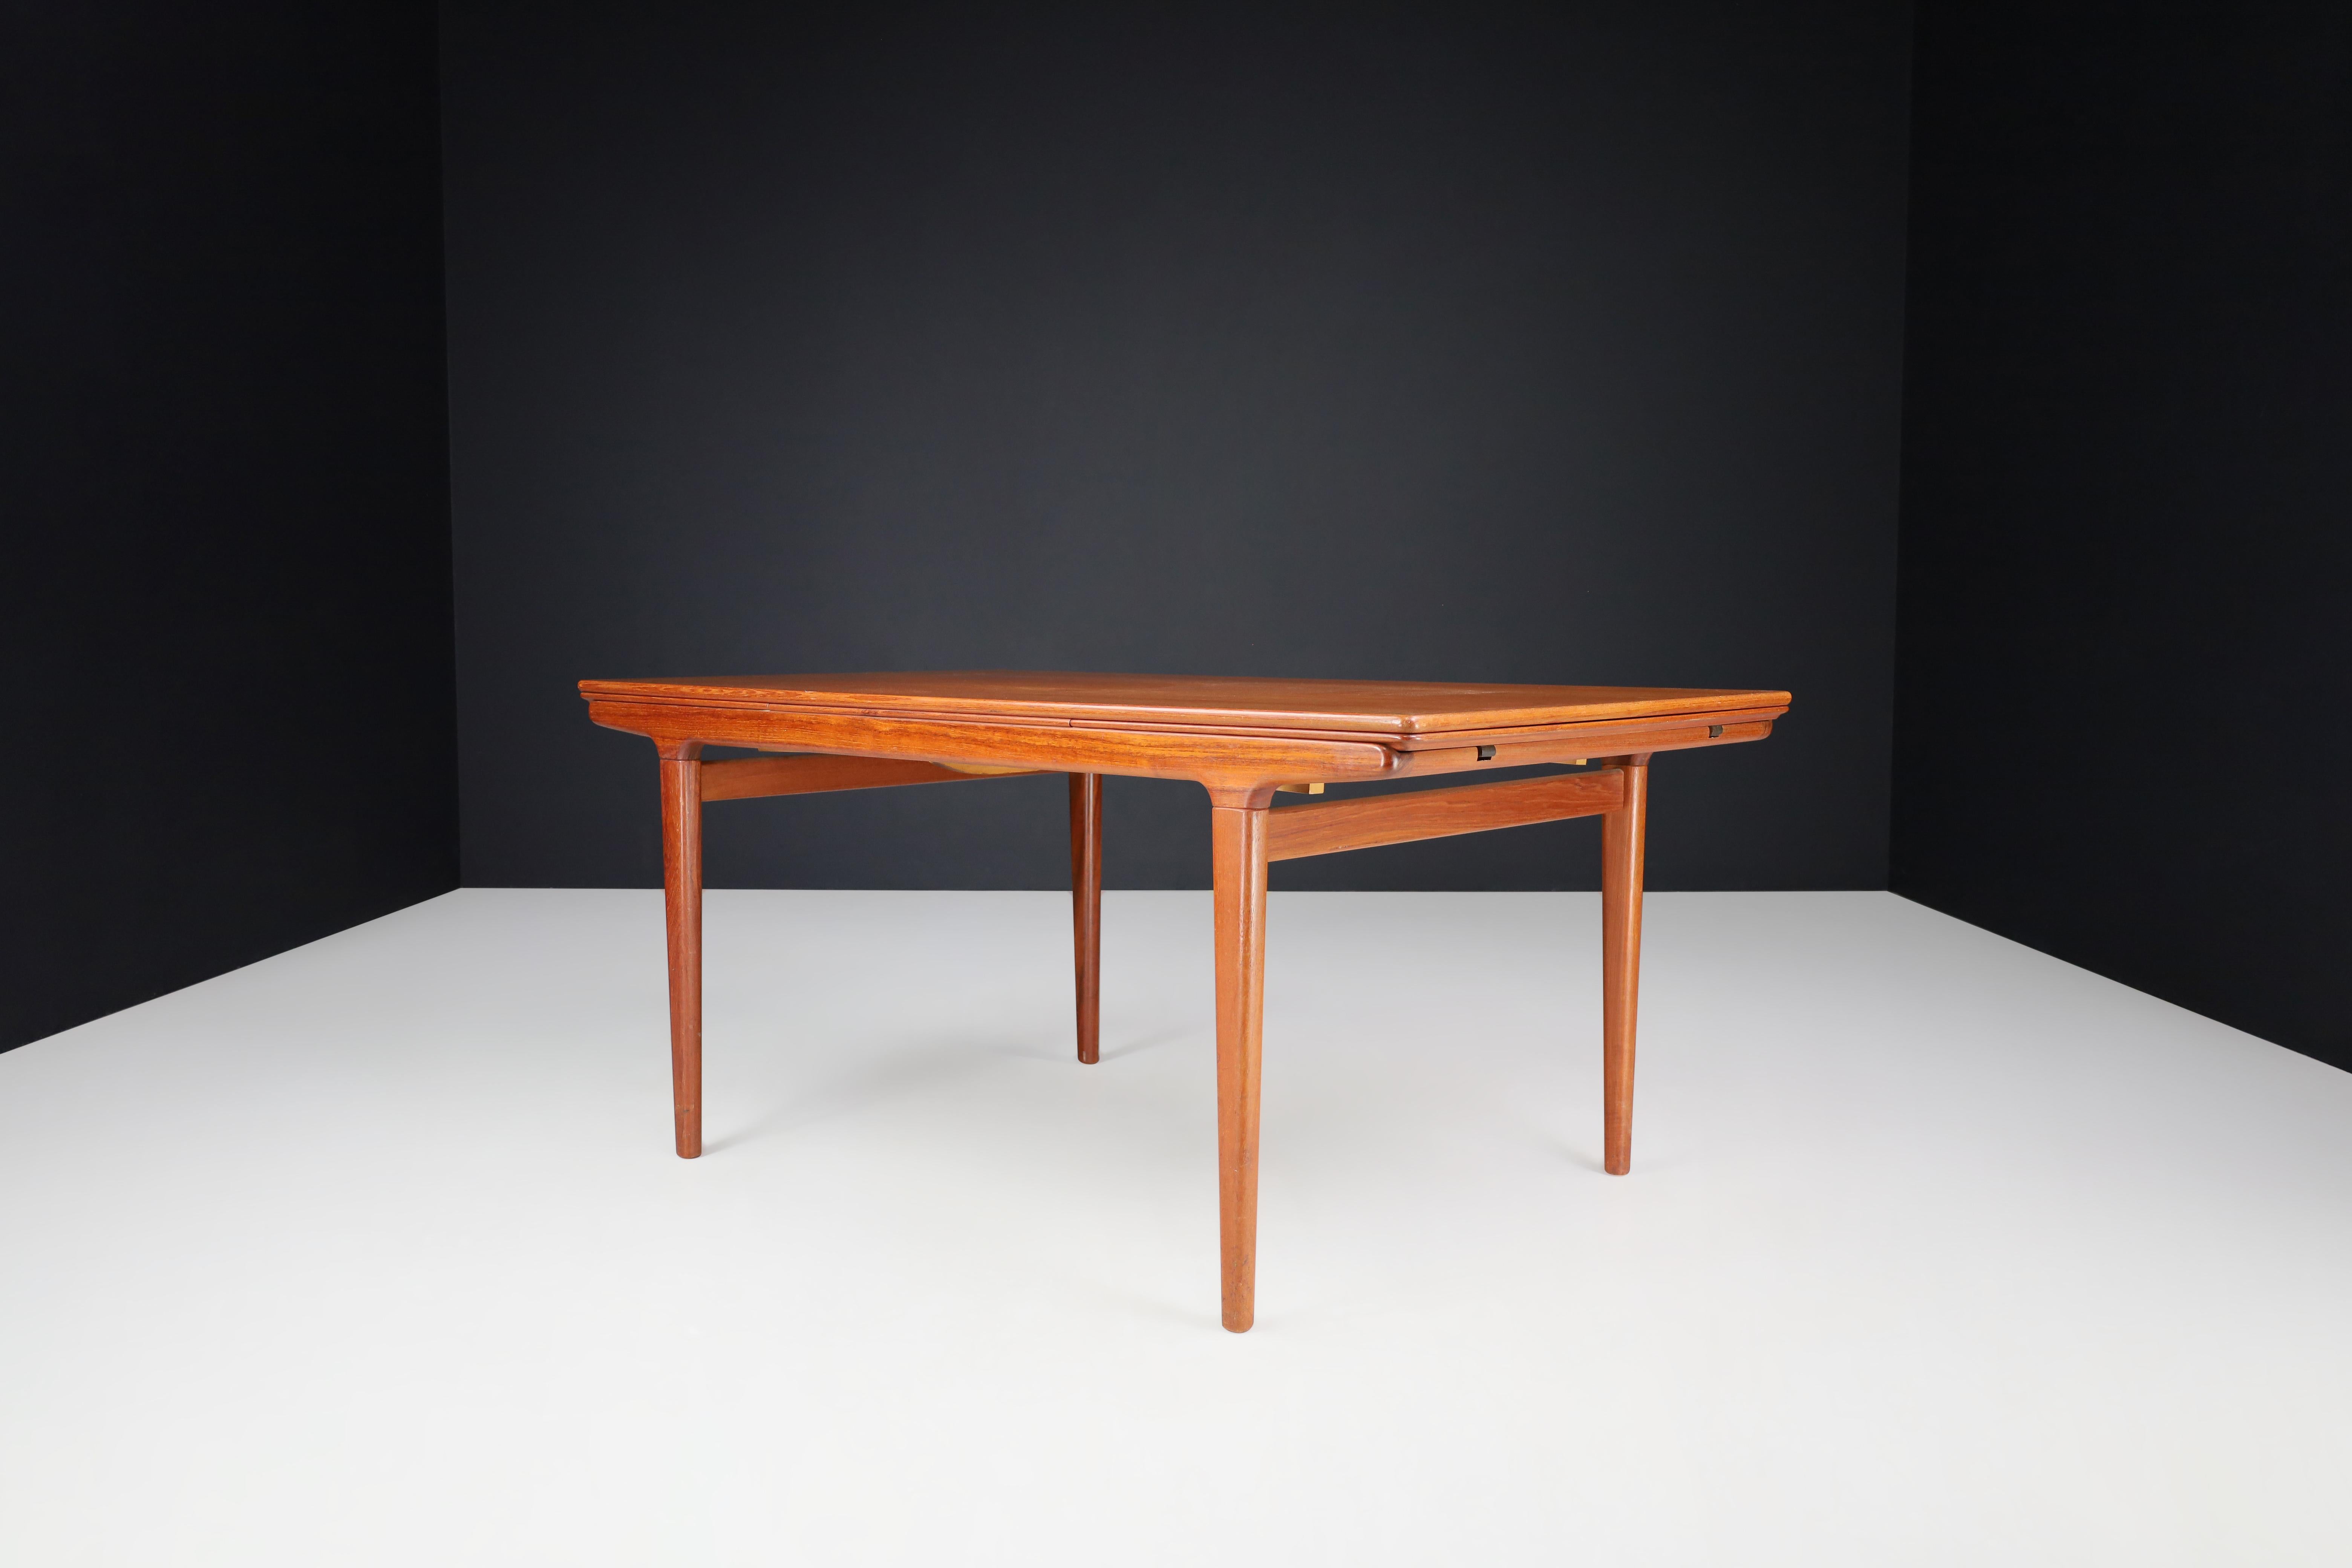 Table de salle à manger à rallonge en teck Niels Møller Danemark, années 1950

Créée par Niels Møller, cette table à rallonge danoise moderne est célèbre pour ses belles lignes effilées et la chaleur du teck. Deux panneaux cachés coulissent